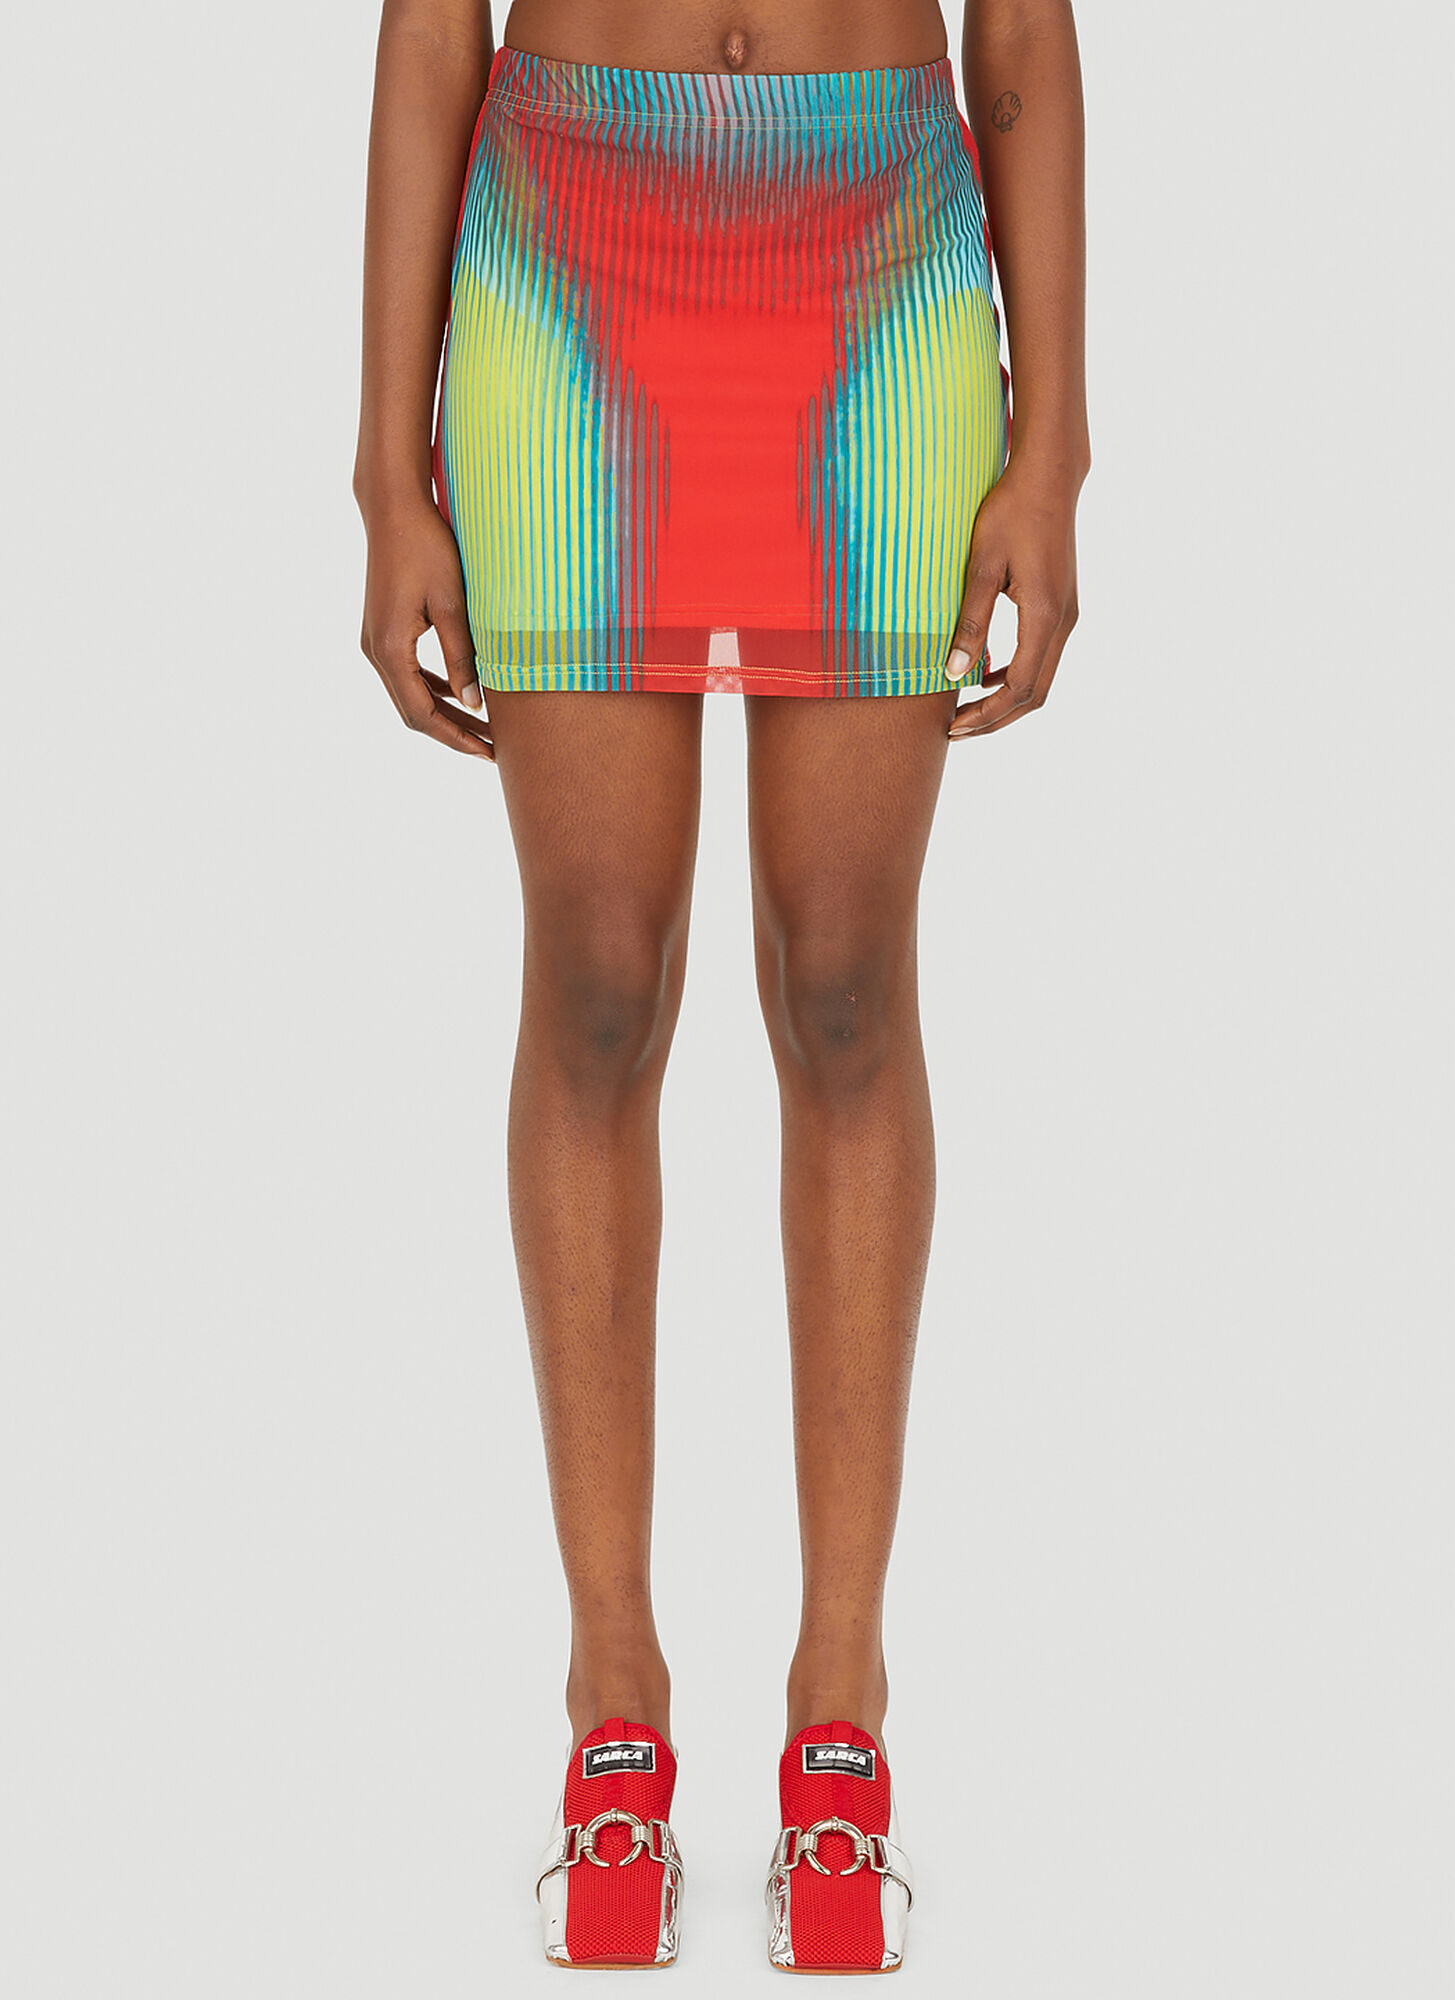 Y/project X Jean Paul Gaultier Body Morph M In Multicolour